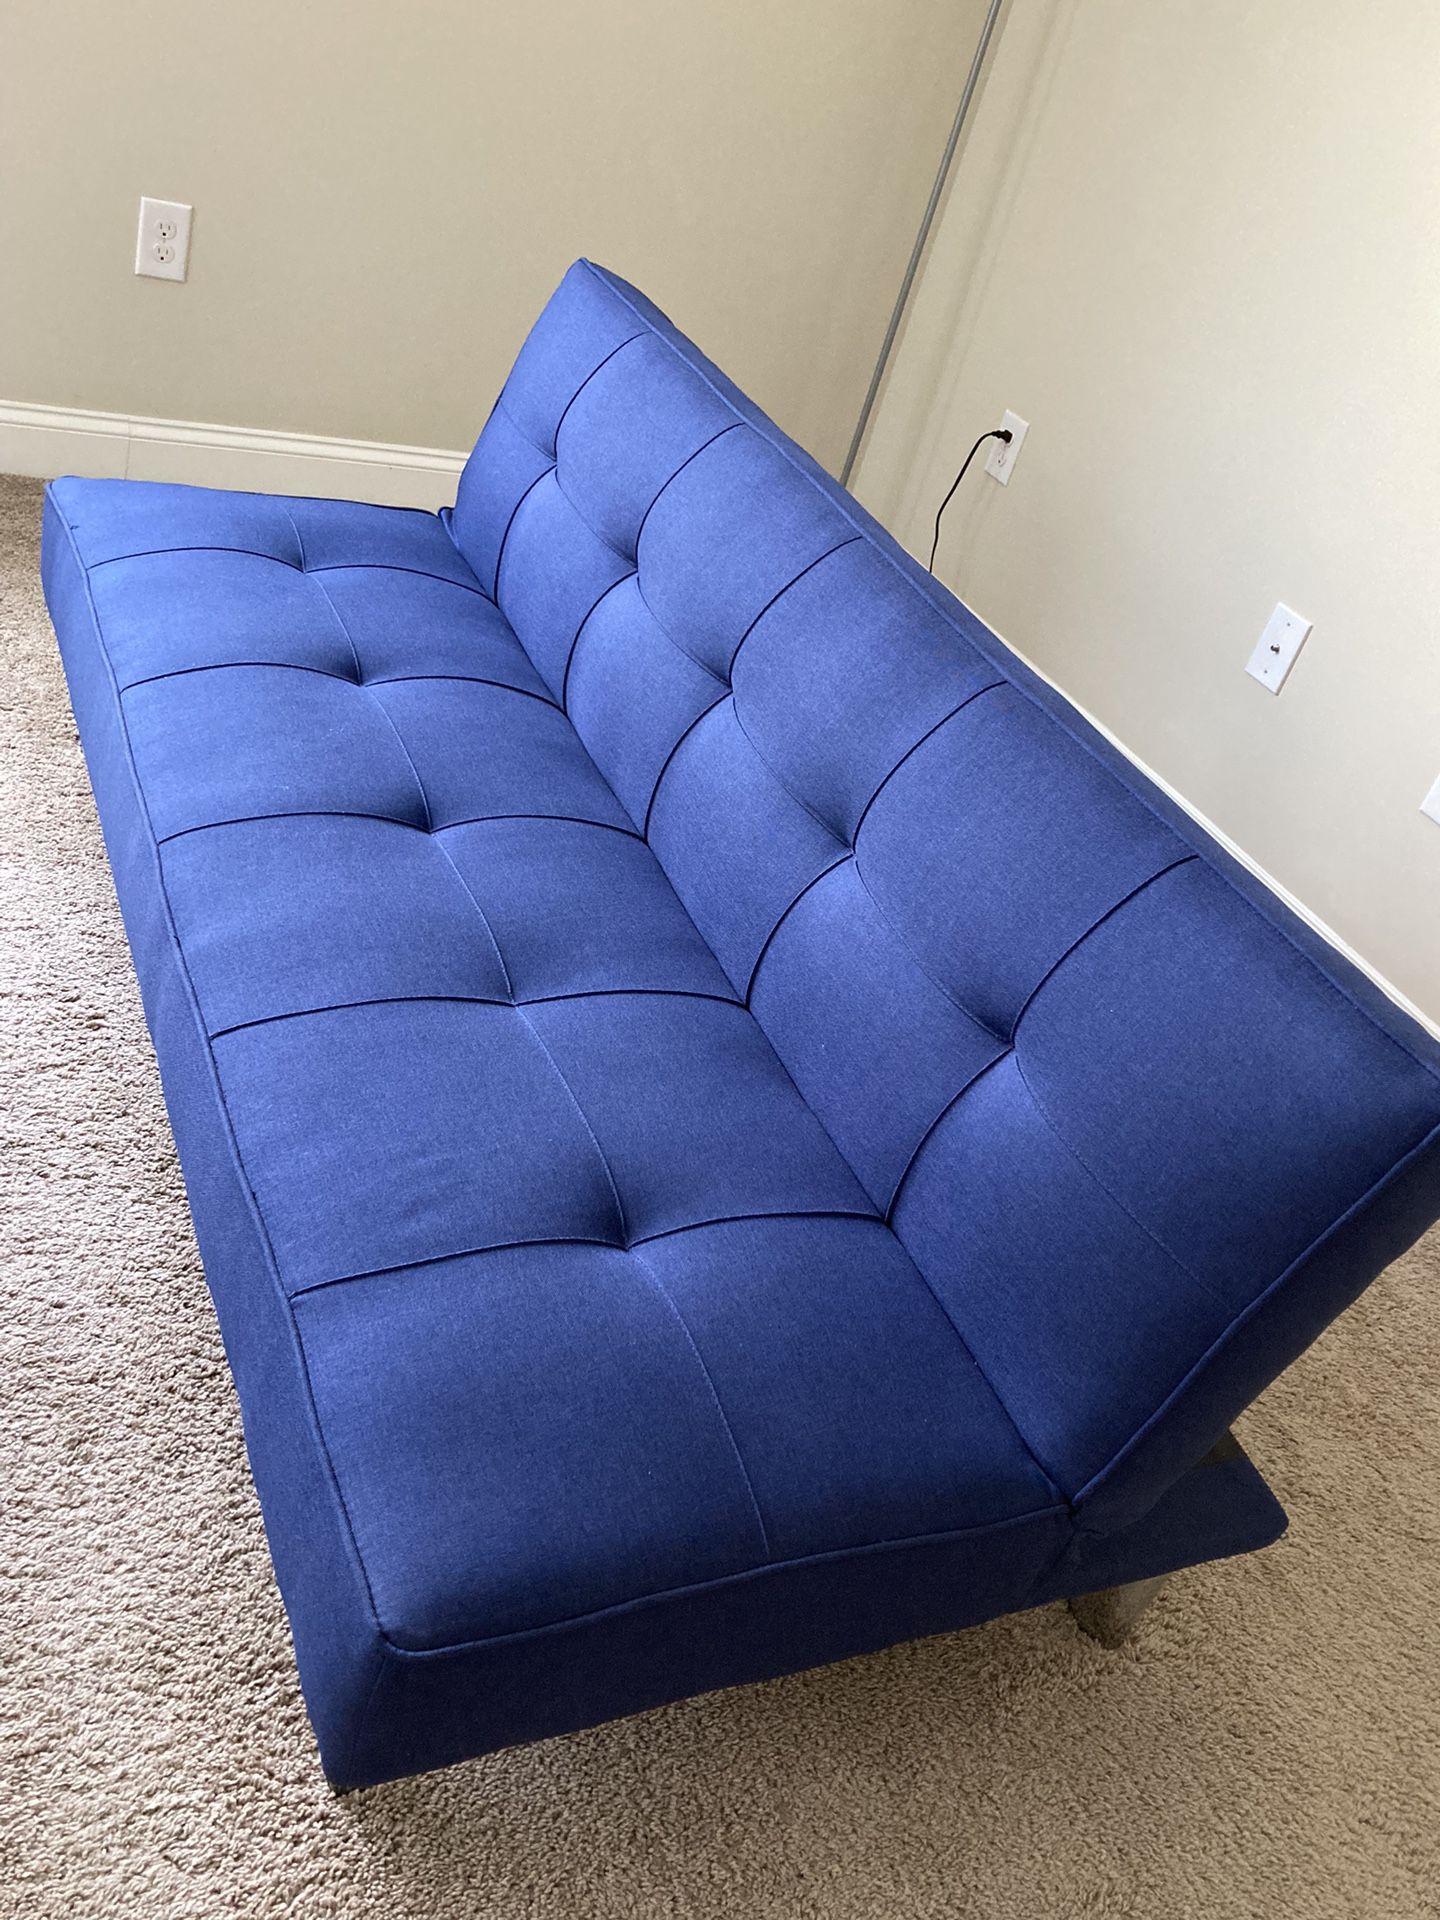 Blue Convertible Sofa with Serta Mattress - pristine condition